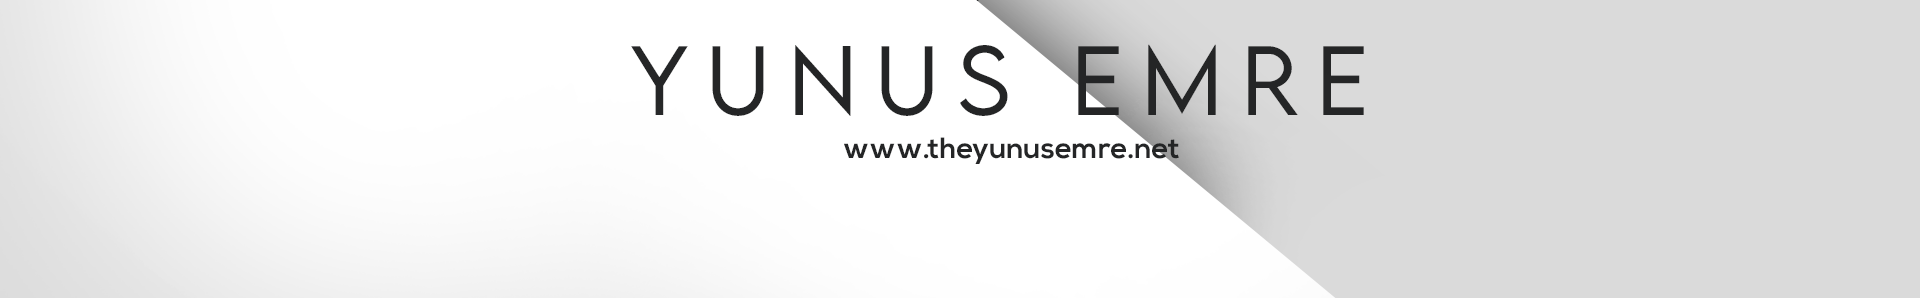 Banner de perfil de Yunus Emre